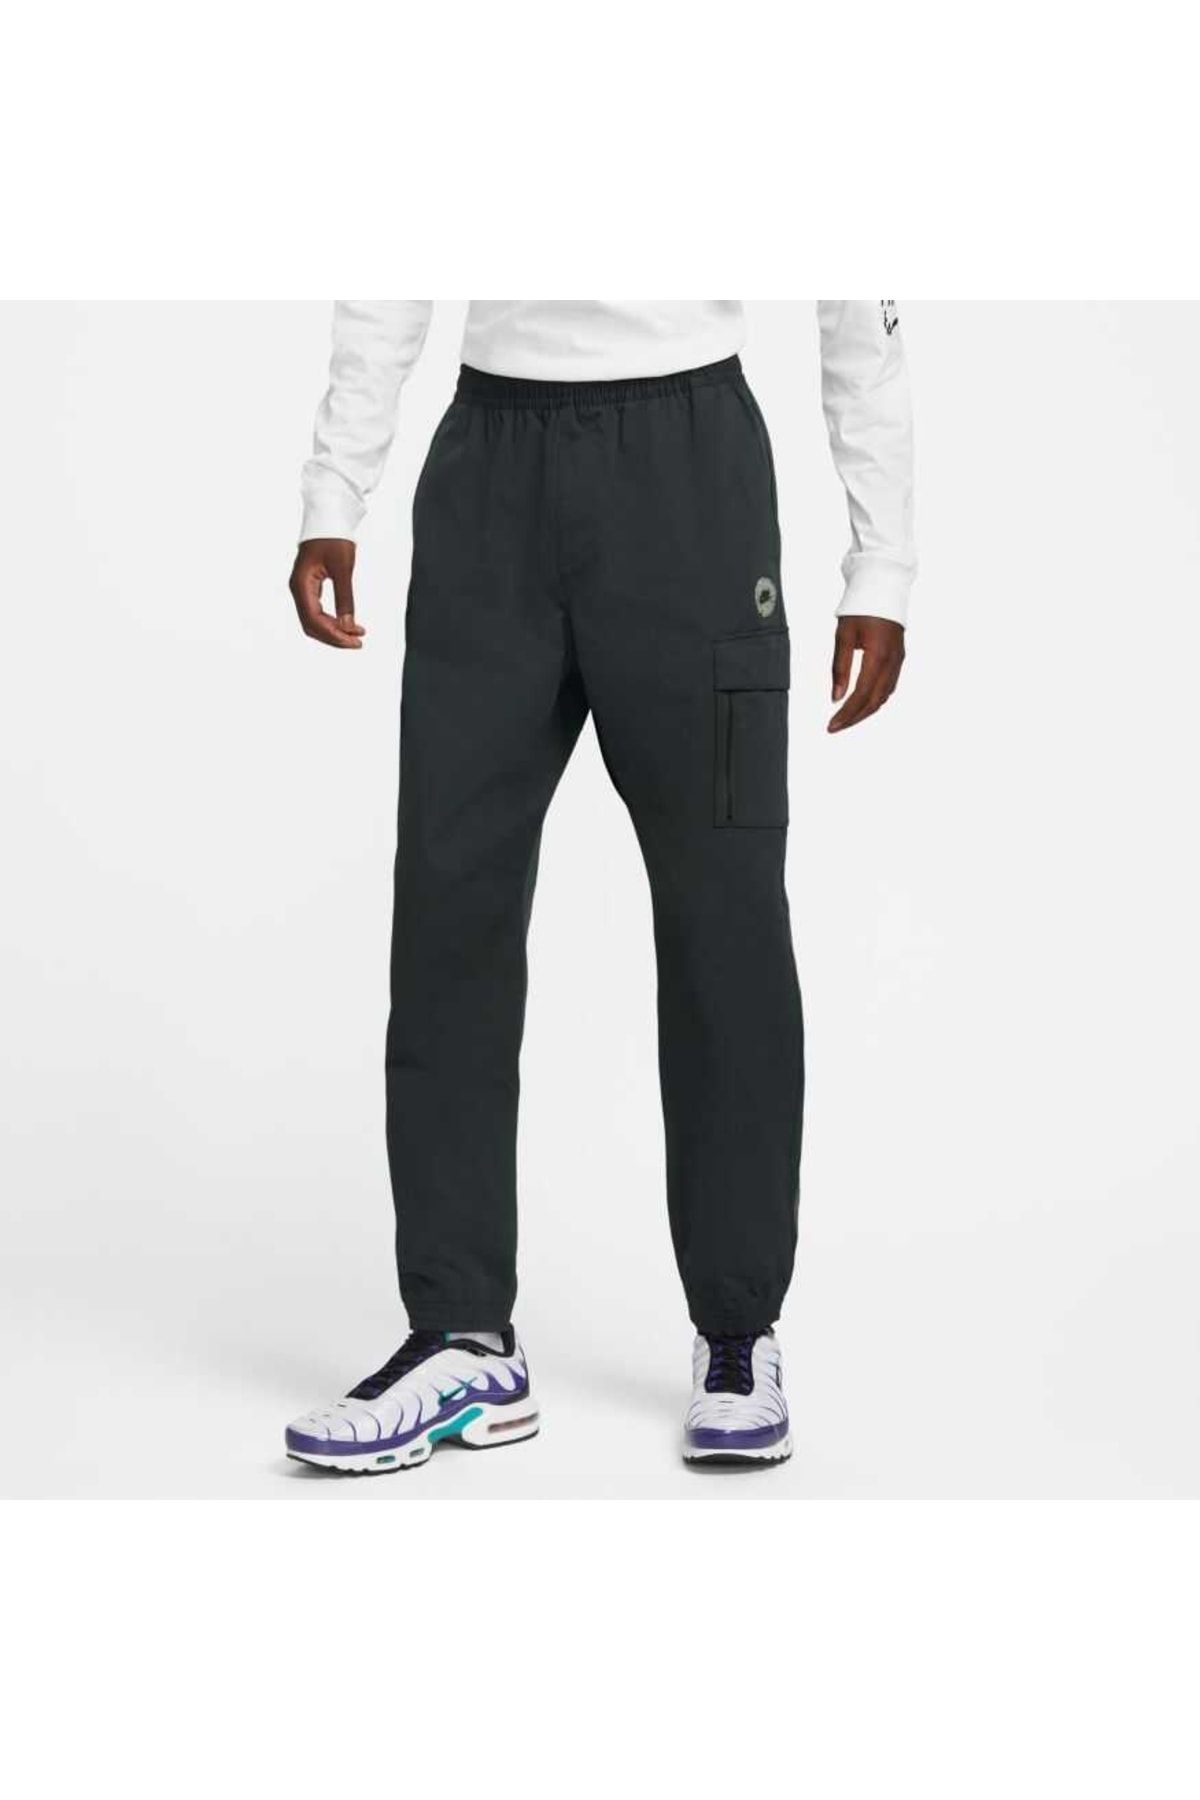 Nike Sportswear Woven Pant Erkek Pantolon Fb2191-010